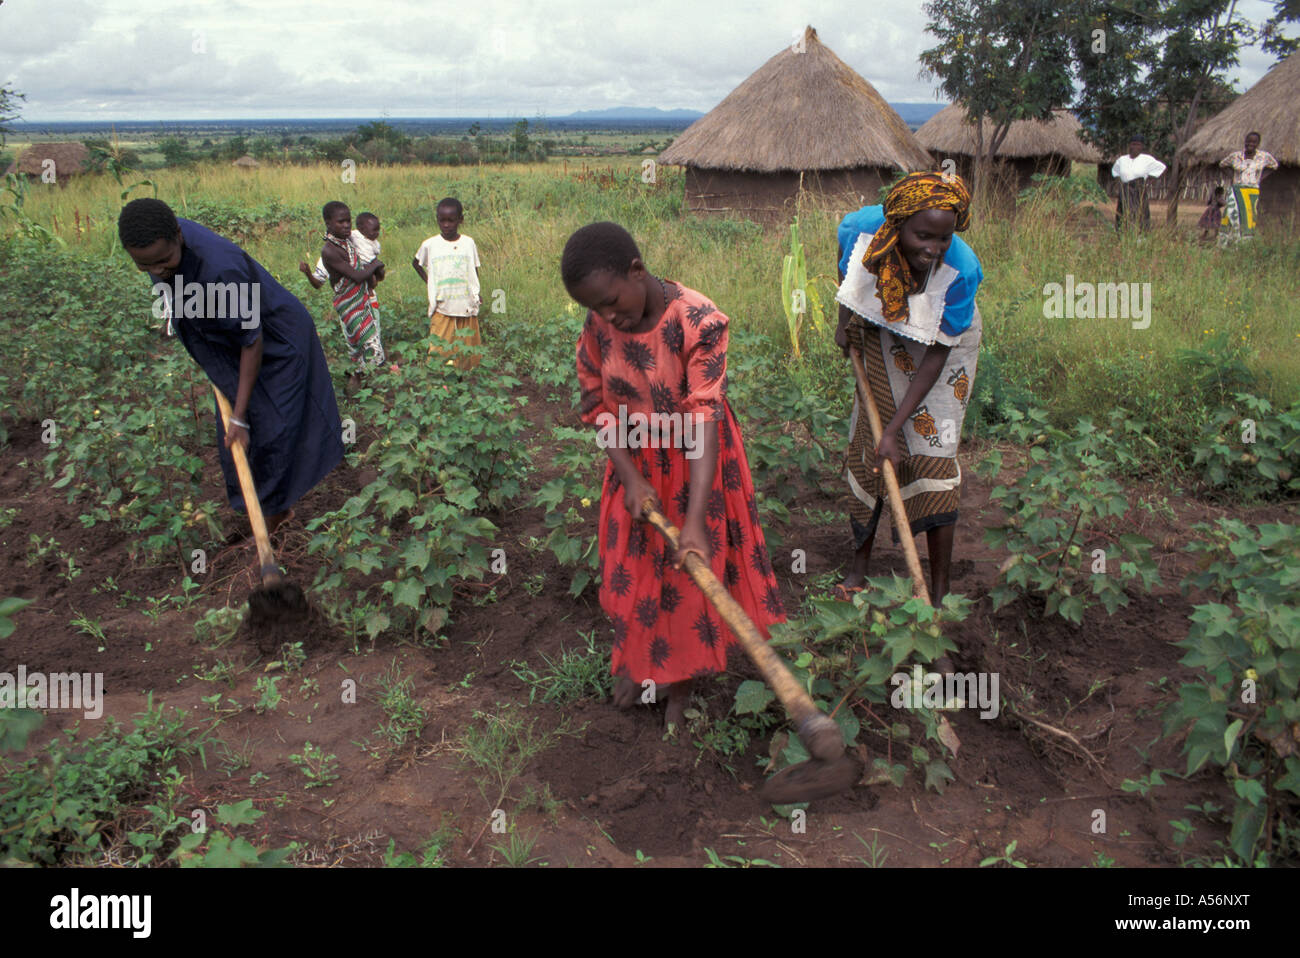 Painet iy8840 3761 Tanzanie famille cultivant la terre issenye au pays en développement, de pays moins développés économiquement de la culture Banque D'Images